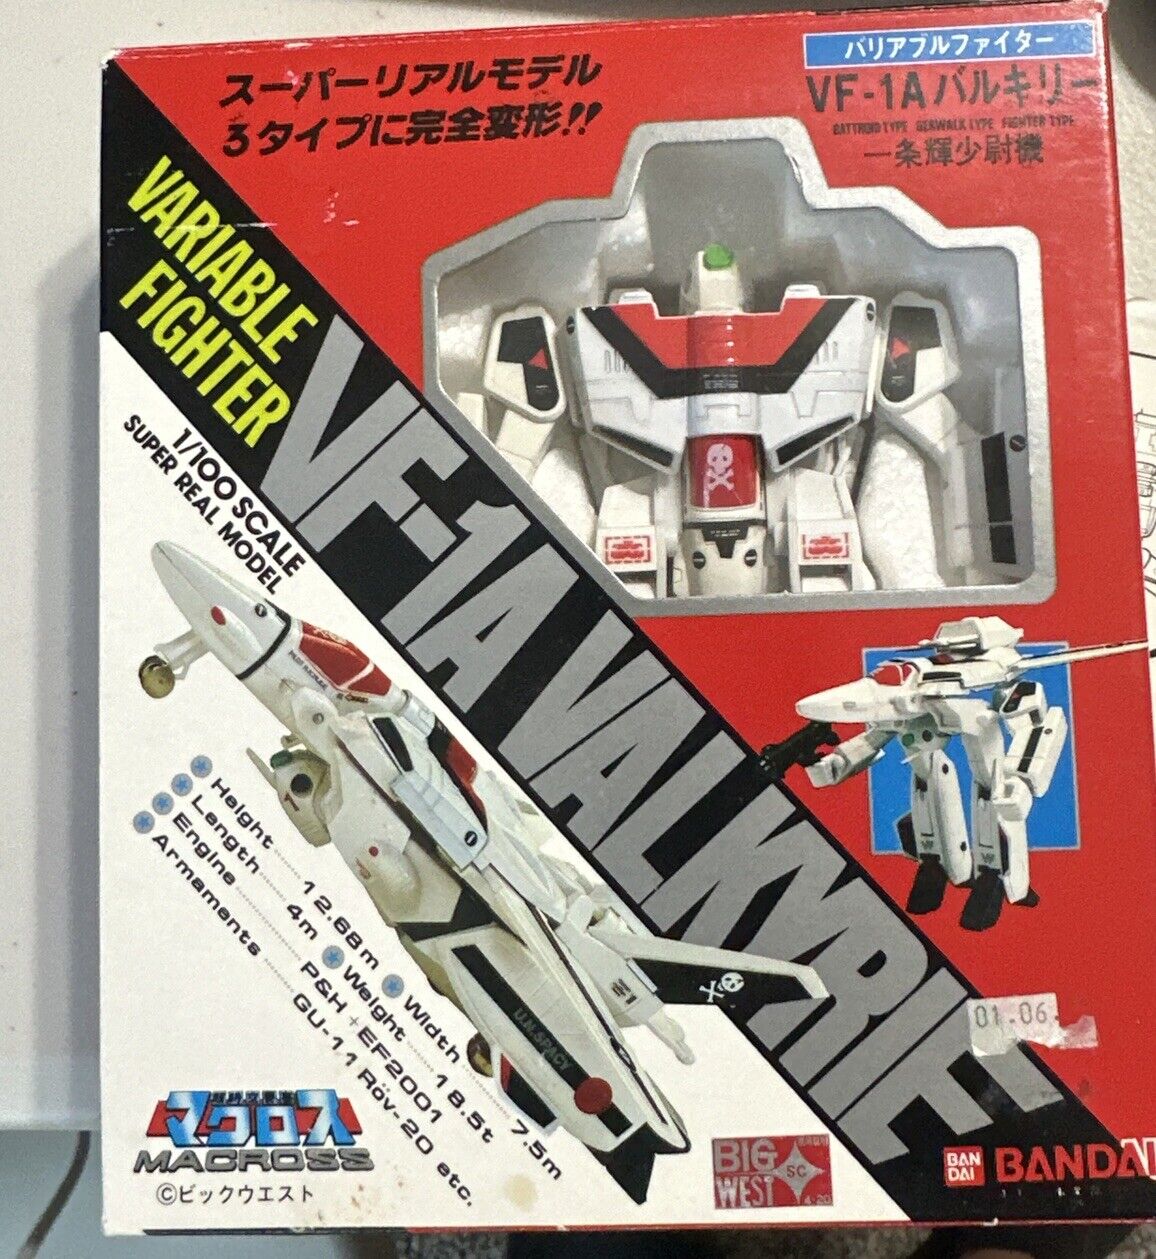 Bandai Macross /Robotech VF-1A Valkyrie. Hikaru Edition DYRL 1/100 Scale